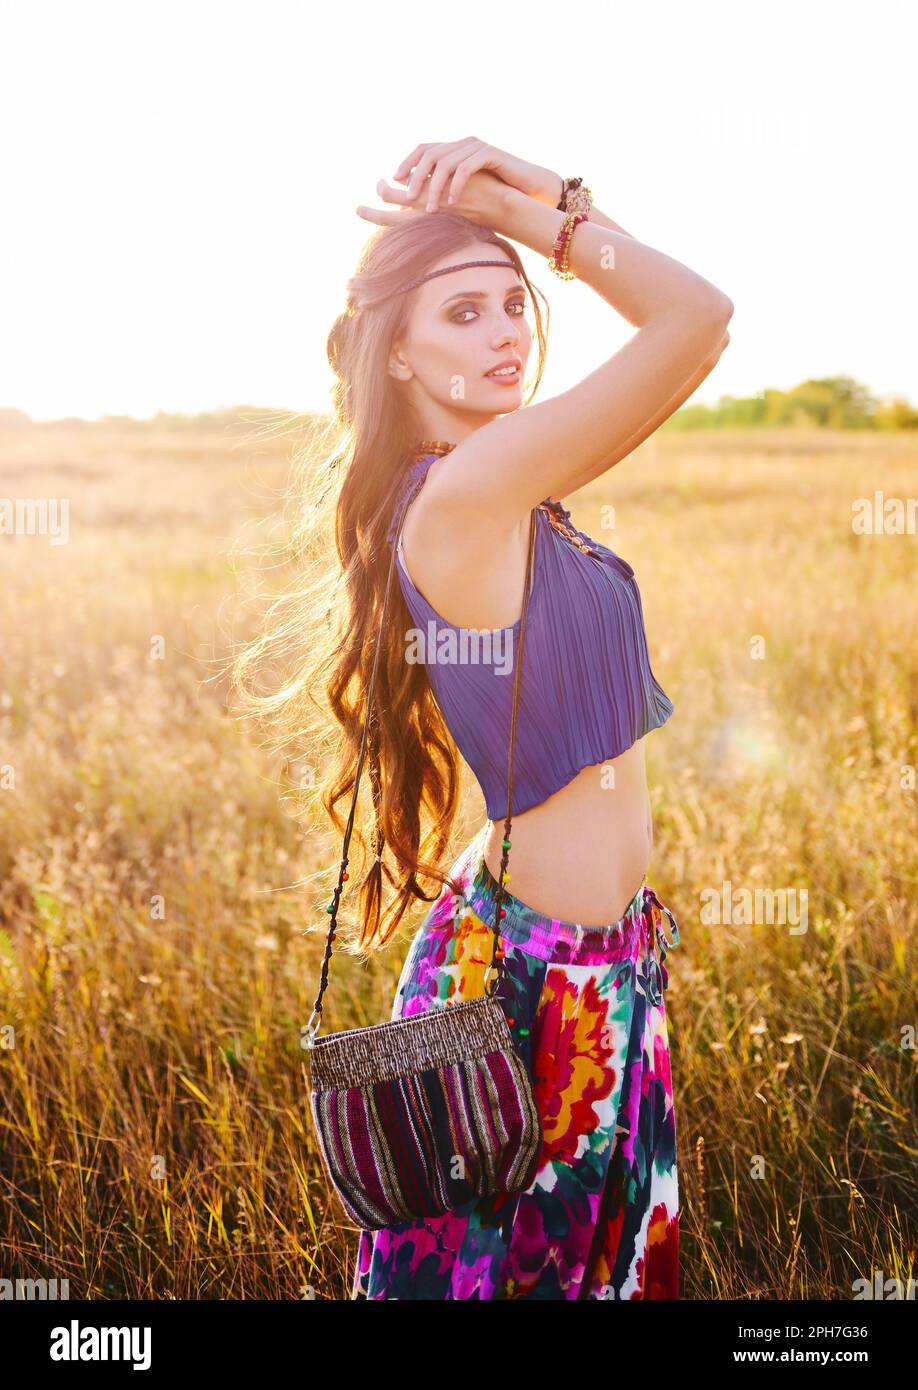 Portrait extérieur de la belle jeune fille de boho (hippie) souriante dans le champ Banque D'Images